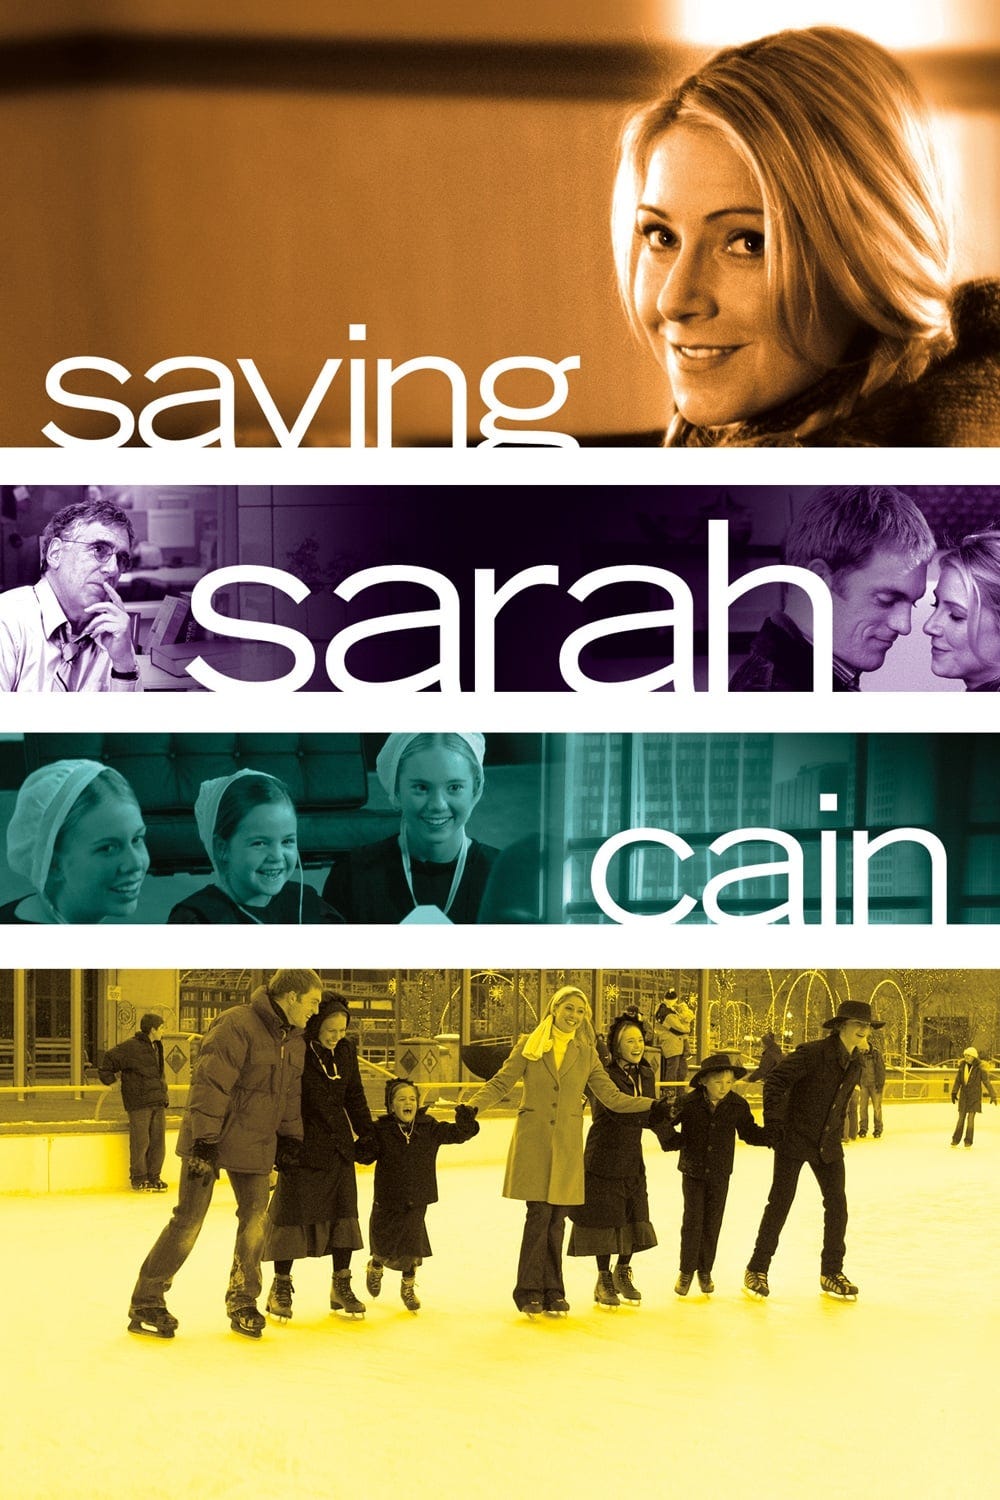 Saving Sarah Cain (2007) | Poster